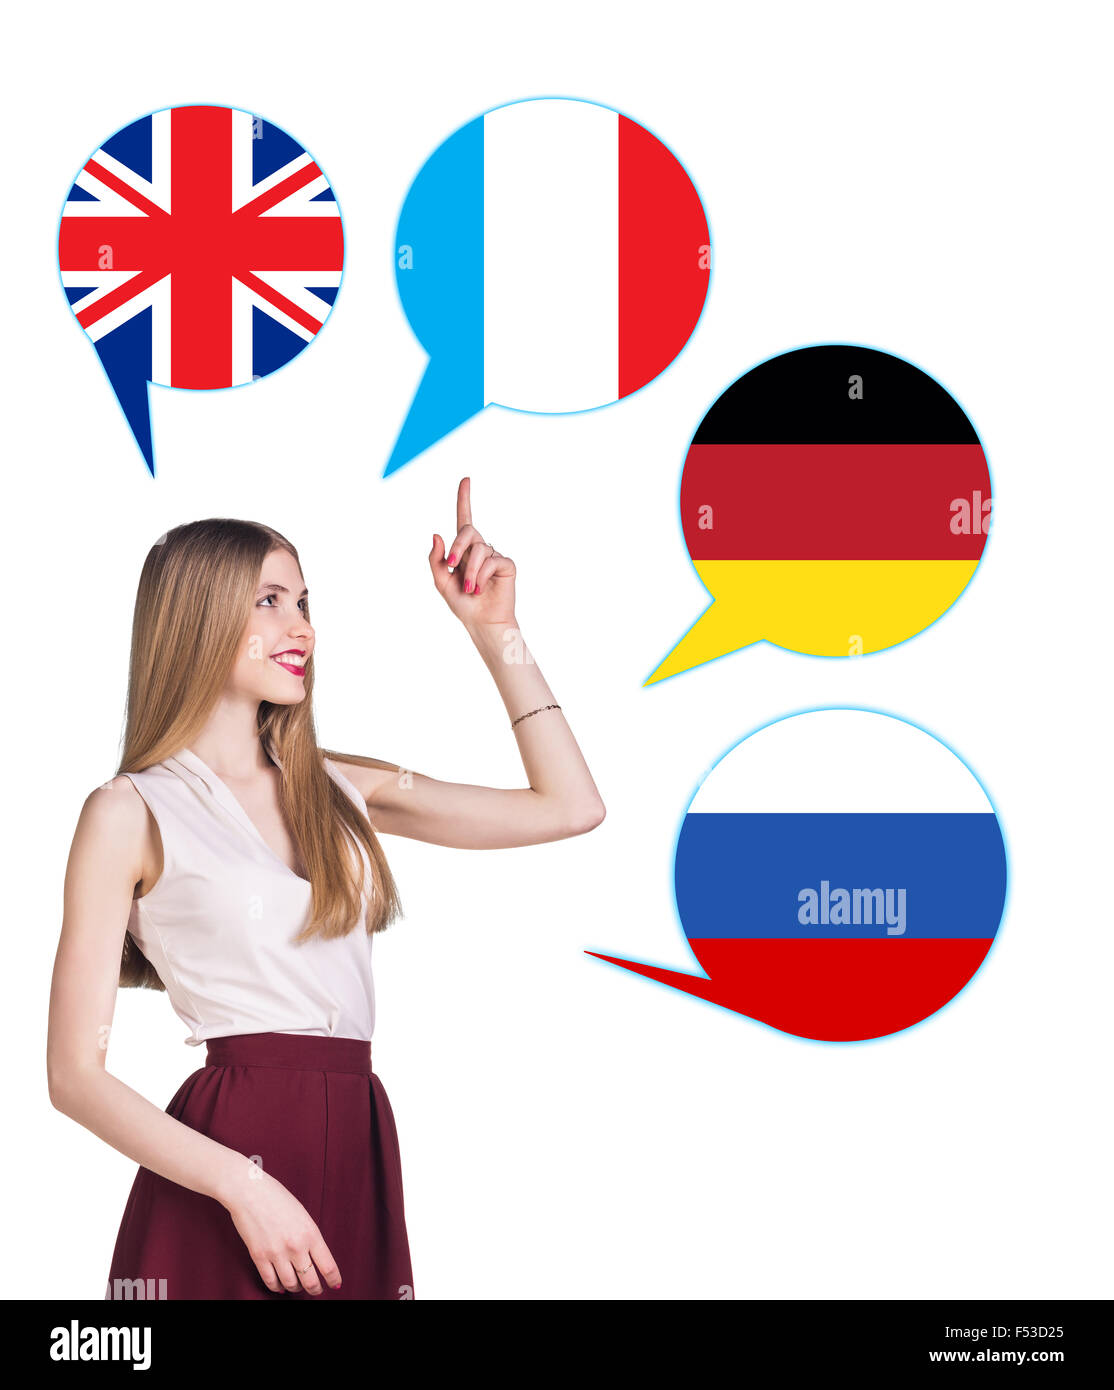 Mujer joven rodeado por burbujas de diálogo con países banderas. Alemania, Gran Bretaña, Rusia, República Checa. Aprendizaje de lenguas extranjeras Foto de stock